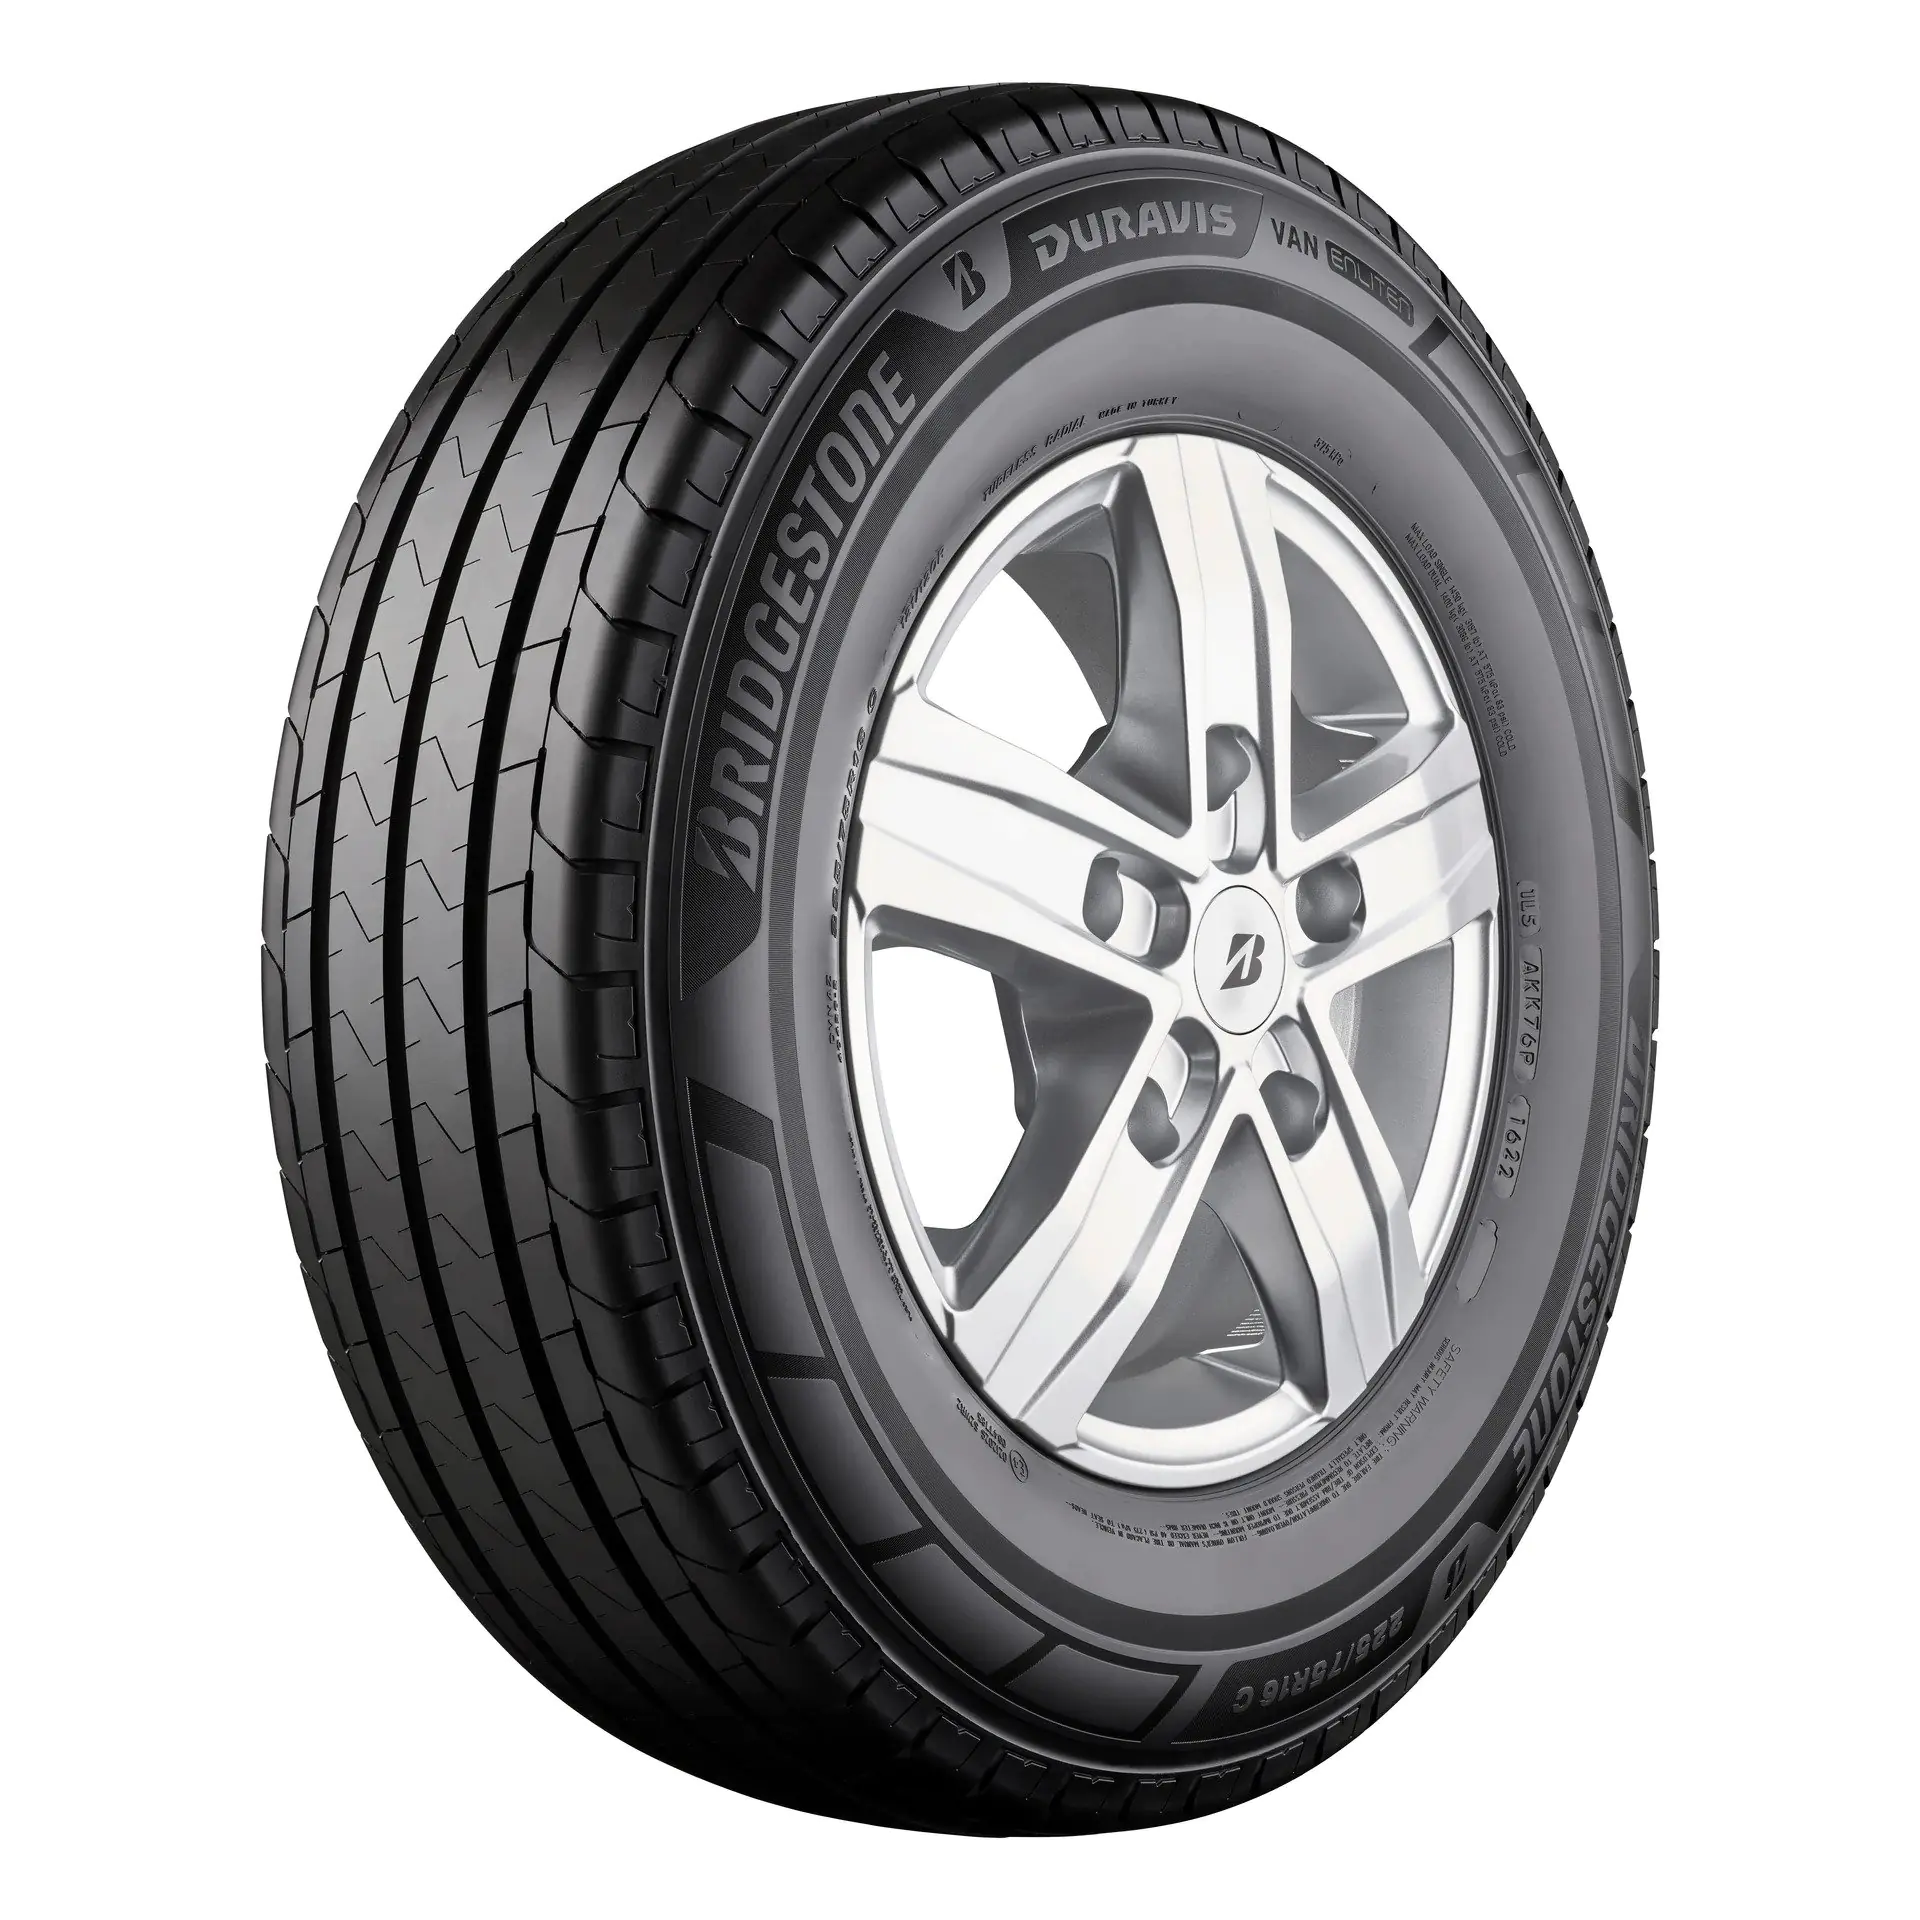 Bridgestone Bridgestone 225/65 R16C 112/110T DURAVIS VAN pneumatici nuovi Estivo 